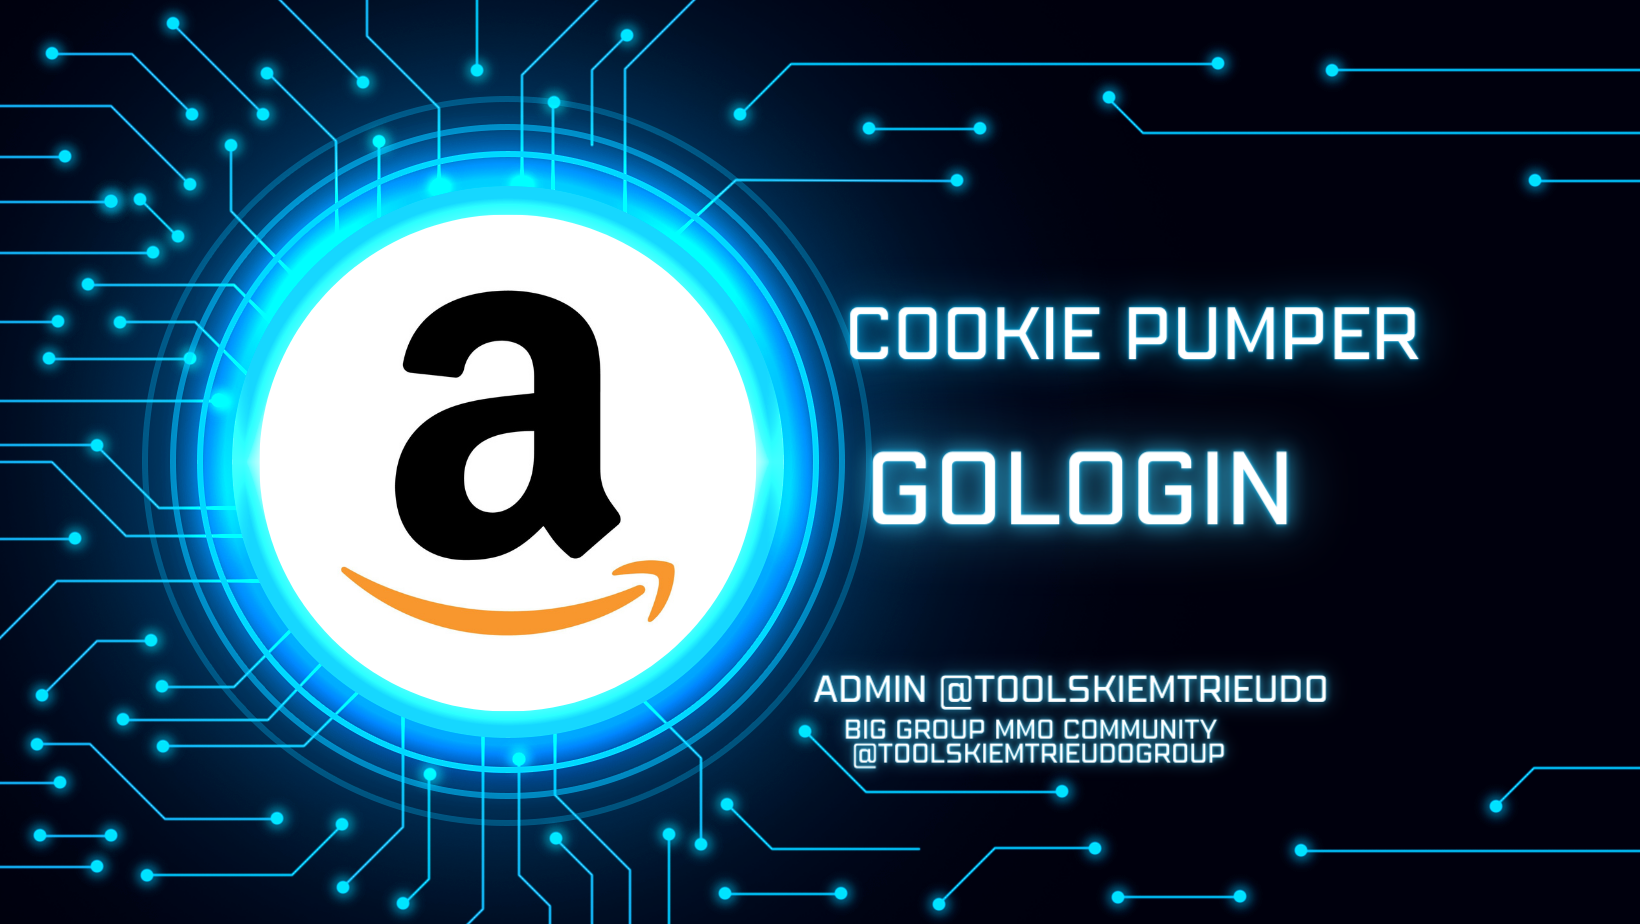 Công cụ nuôi tài khoản amazon trên Gologin như người dùng thật- Amazon cookie Pumper on Gologin Automation like a human